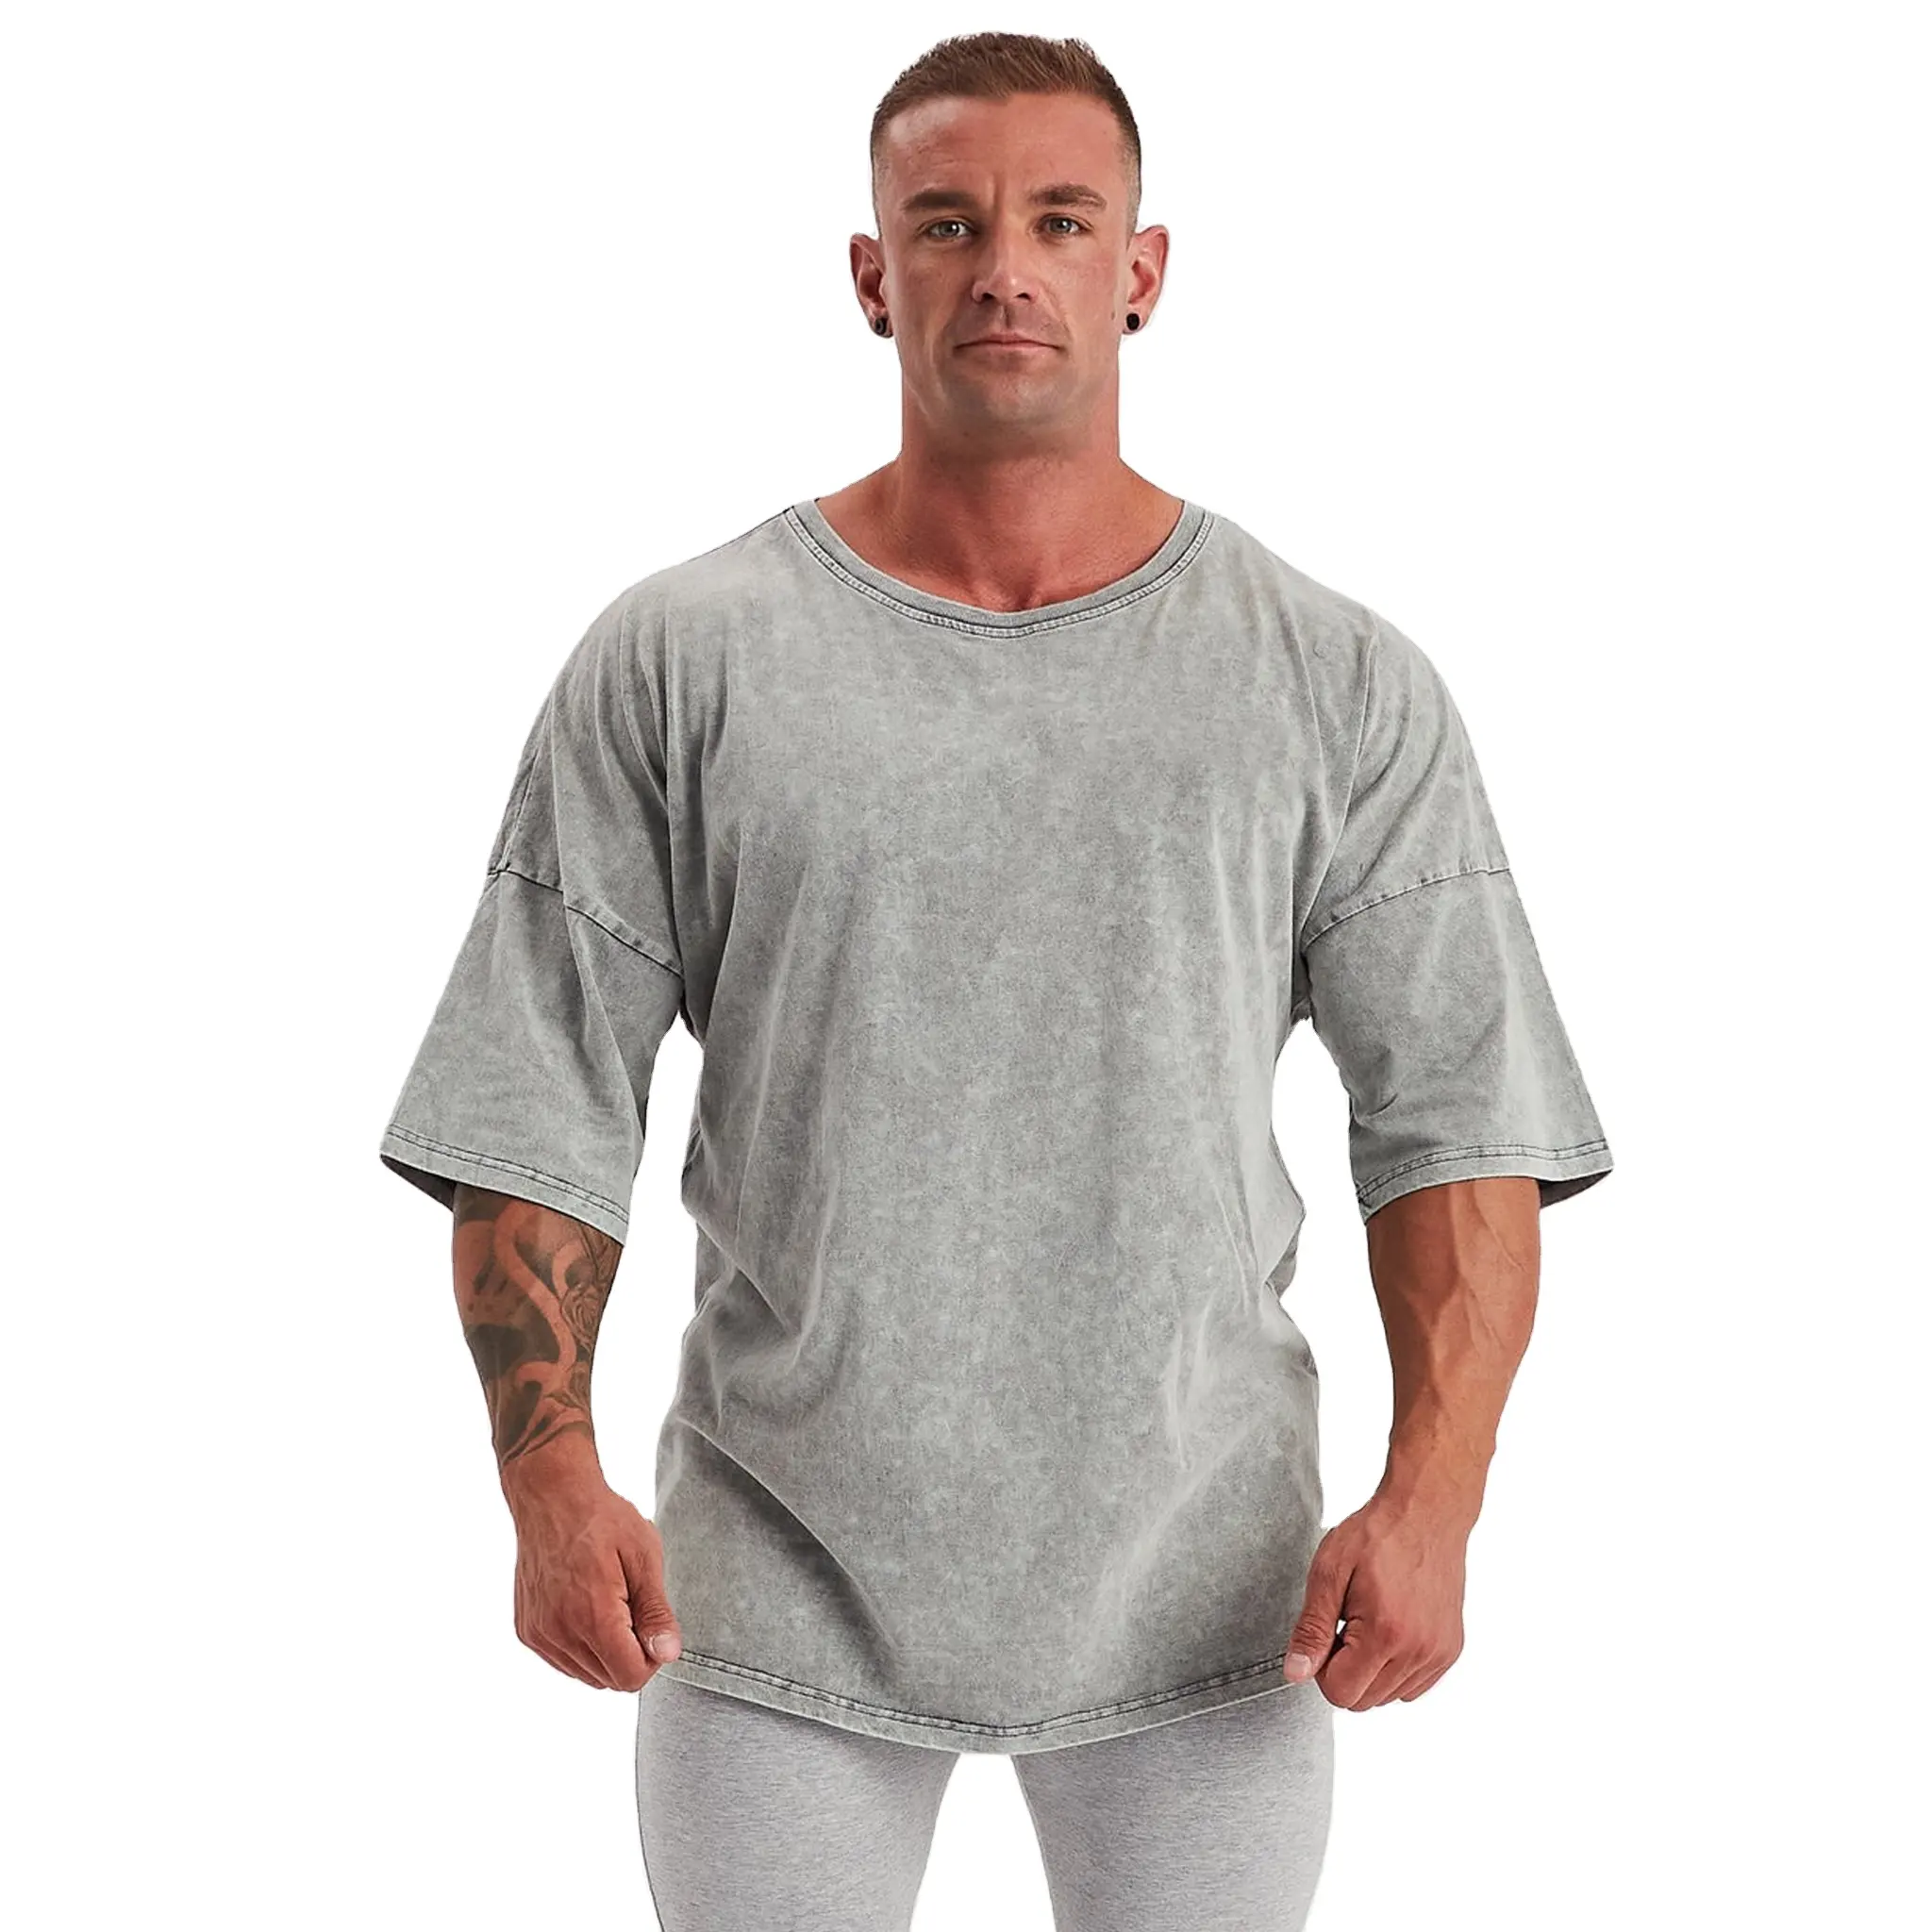 Großhandel Bio-Baumwolle Logo individuelles einfarbiges Acid-Wash-T-Shirt Herrenbekleidung Übergröße T-Shirt schwergewicht Acid-Wash-Shirts